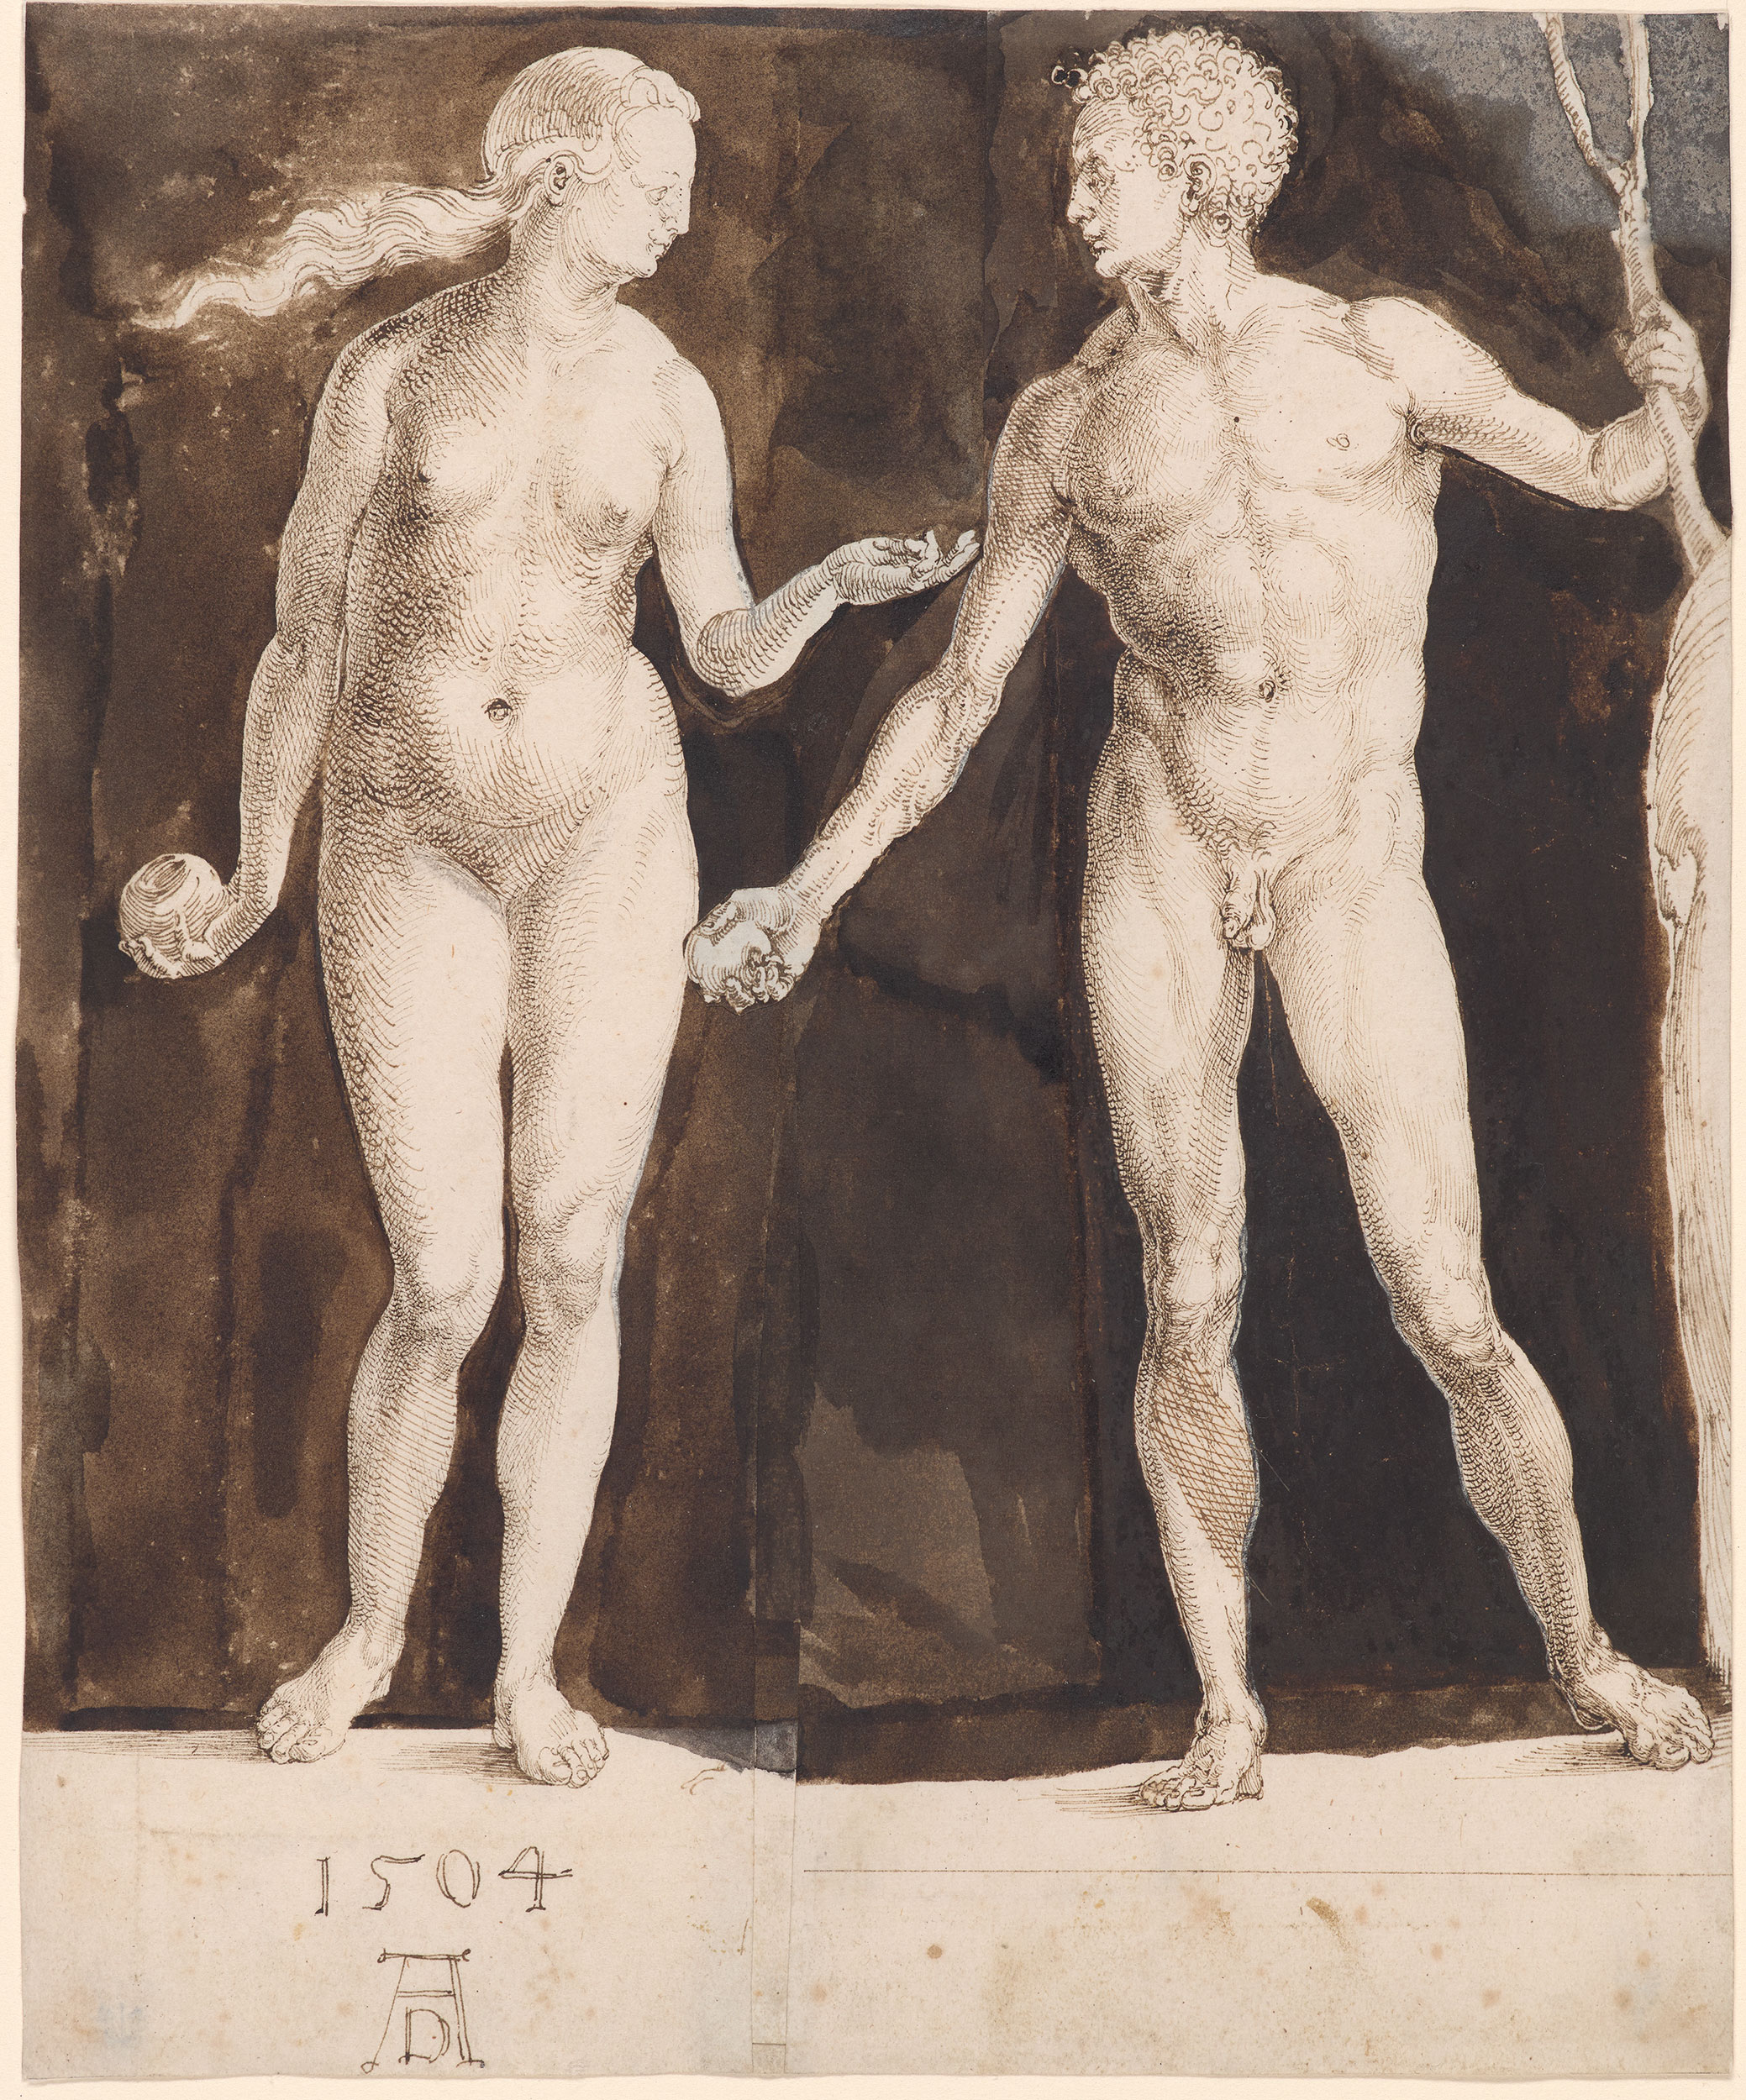 Eva und Adam by Albrecht Dürer - 1504 - 242 x 201 mm The Morgan Library & Museum